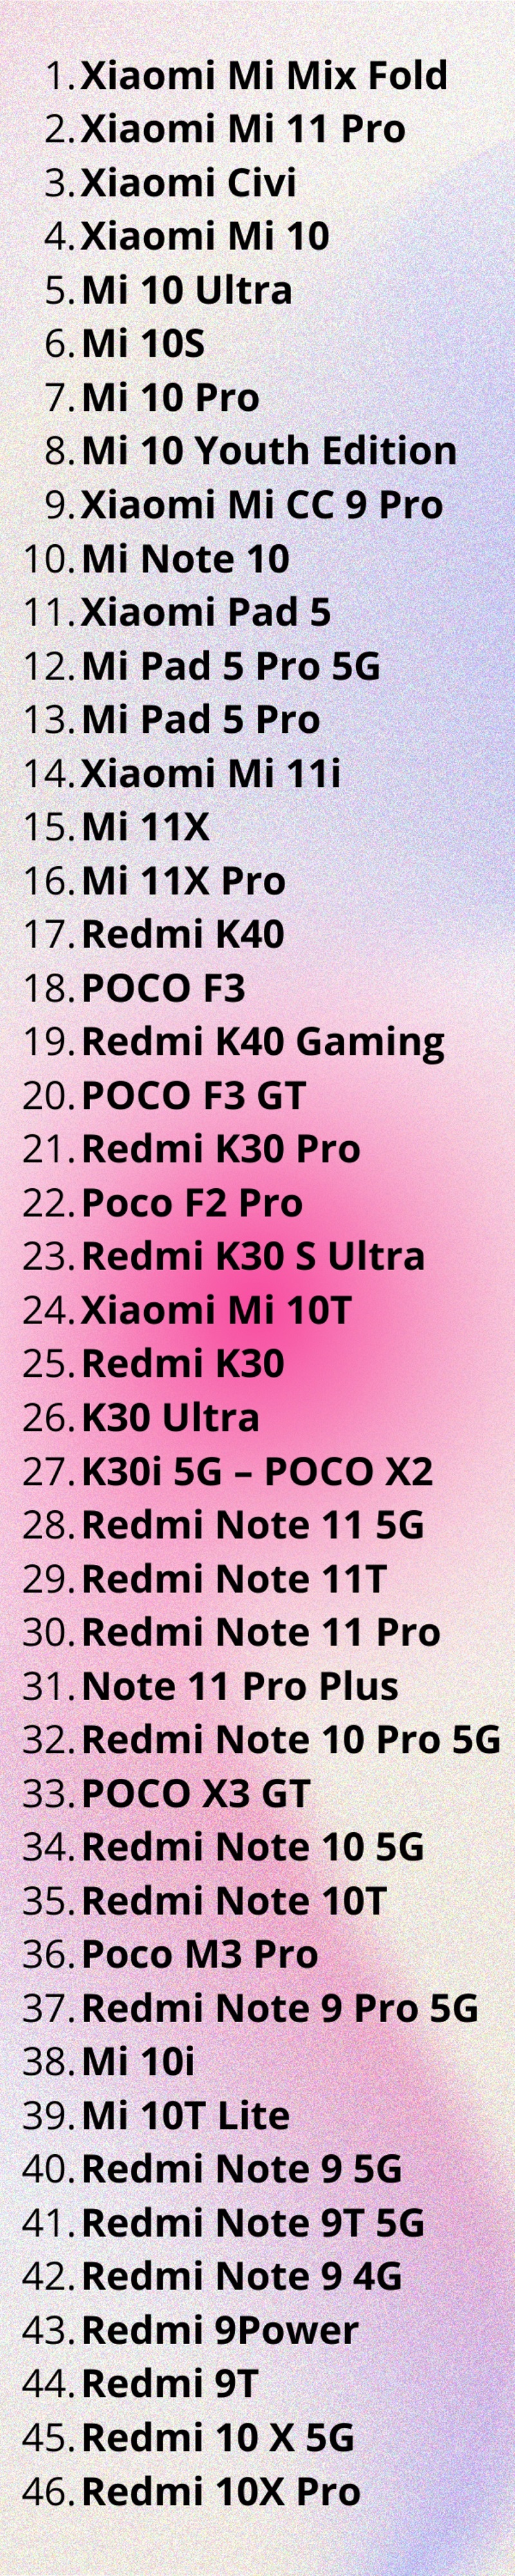 Danh sách điện thoại Xiaomi nâng cấp MIUI 13 ngày 28/12